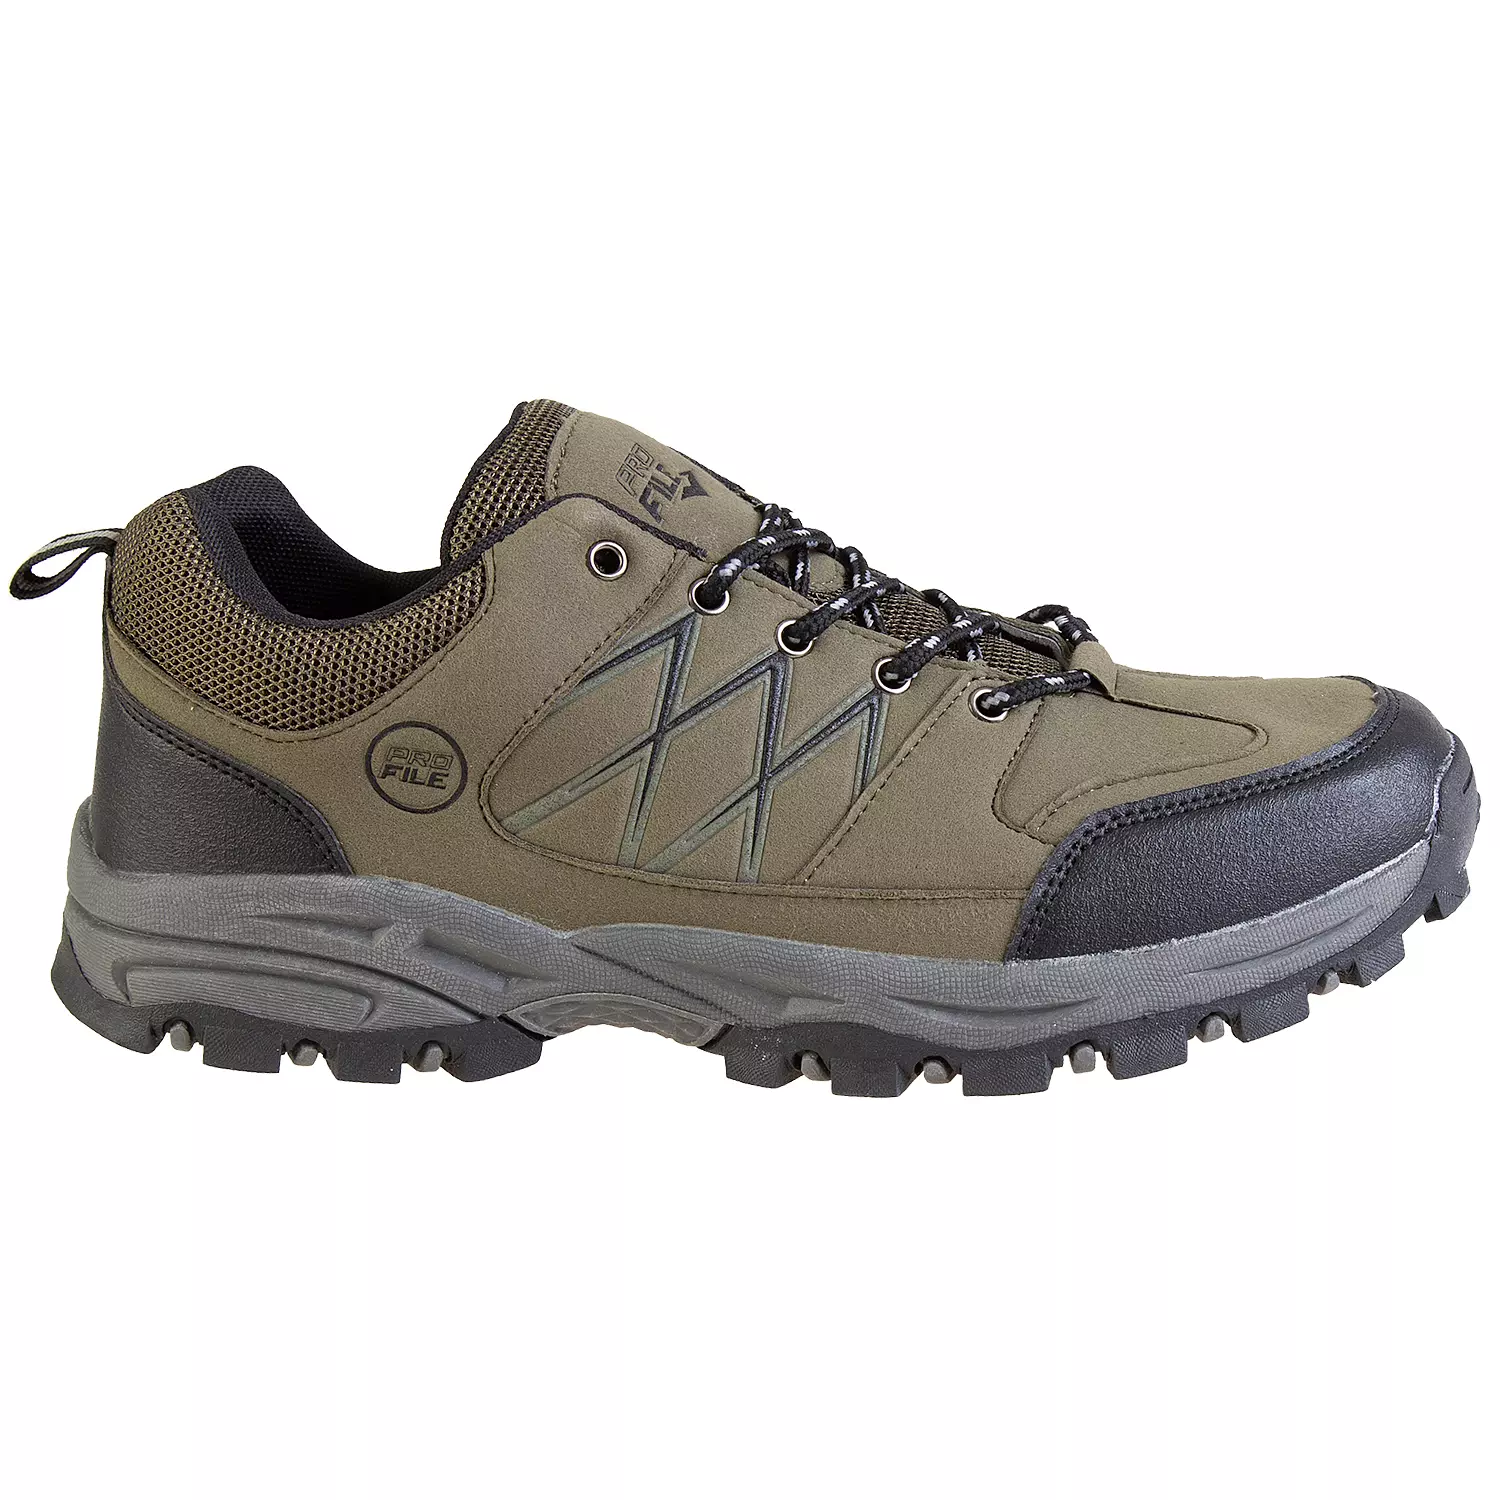 Chaussures de randonnée basses pour hommes avec bandes réfléchissantes, kaki, taille 12